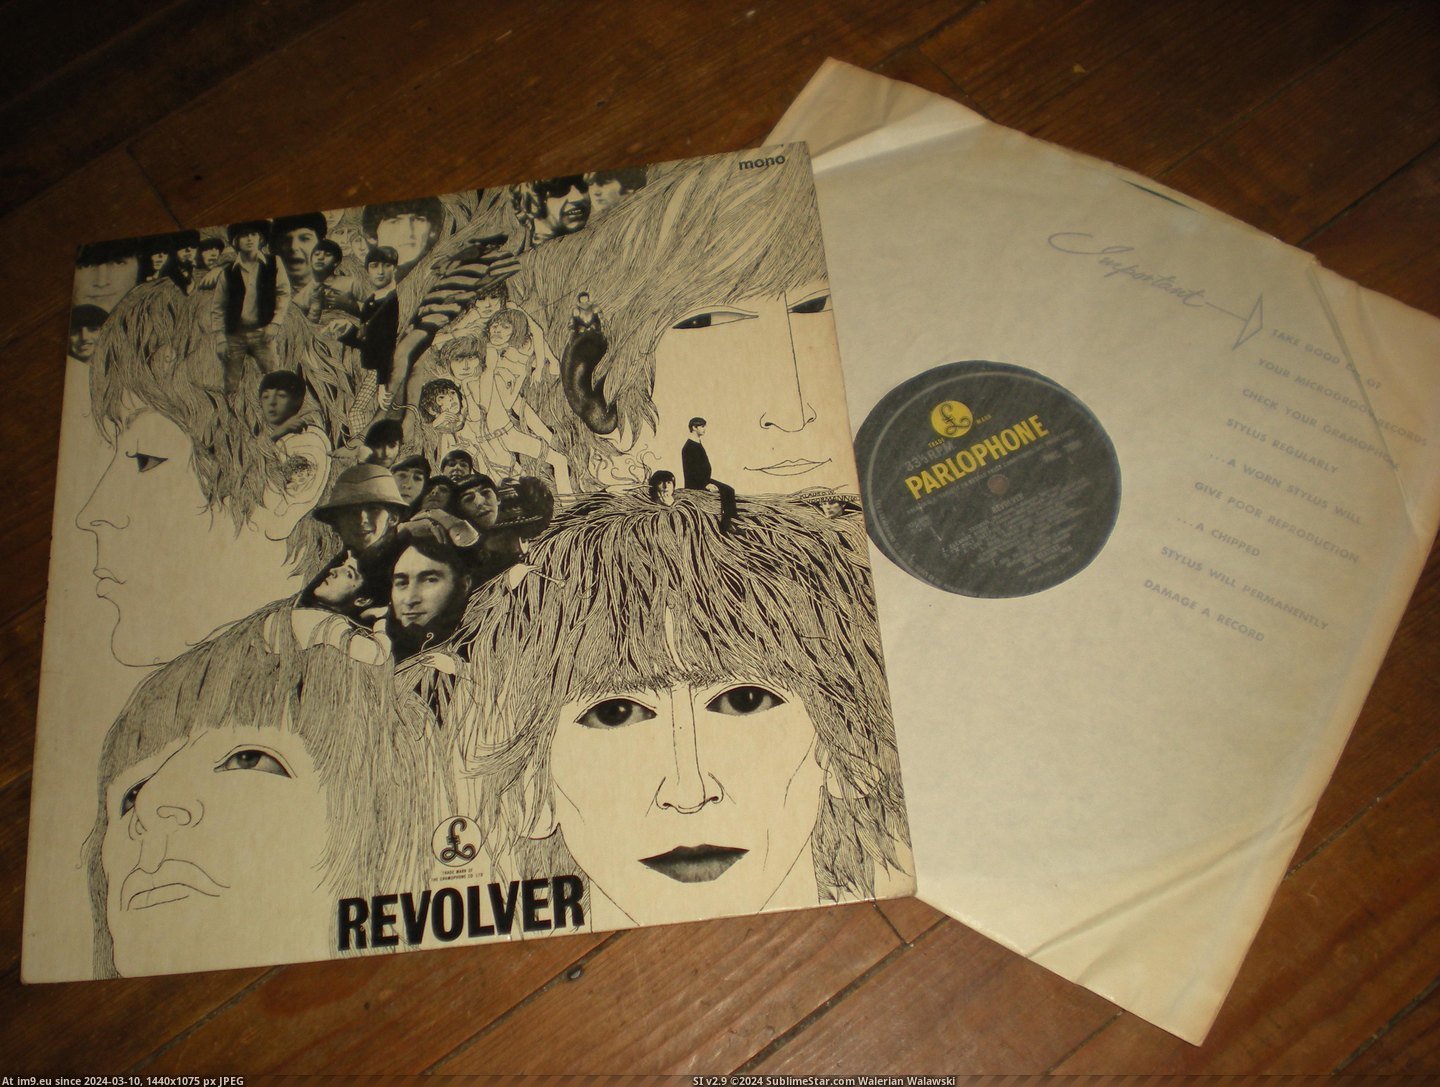 #Day  #Revolver Revolver E J Day 27-06-14 1 Pic. (Bild von album new 1))